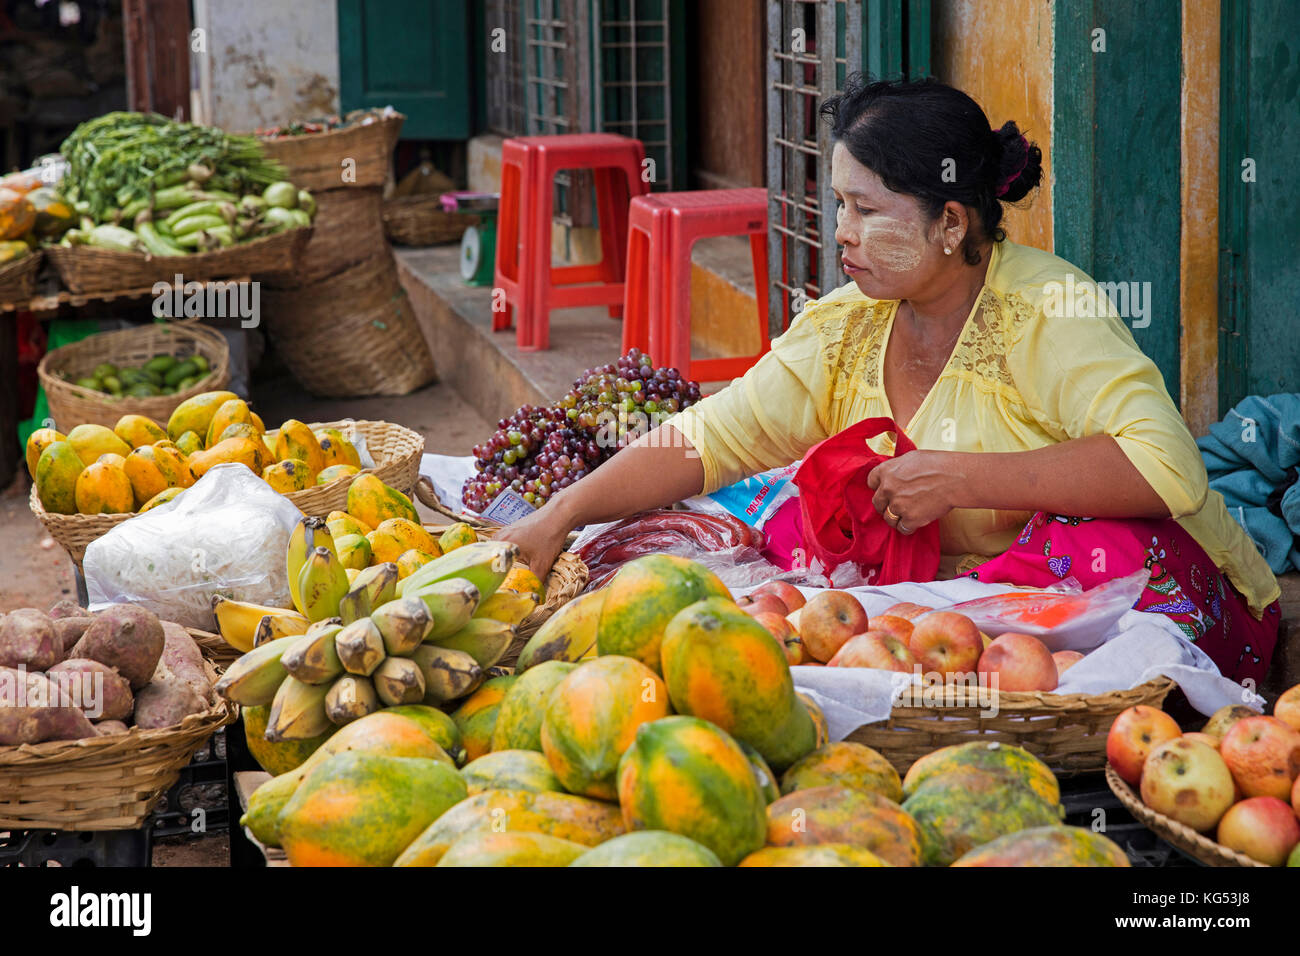 Femme birmane la vente de fruits, la papaye, les bananes et les pommes au marché alimentaire de la ville mandalay, myanmar / Birmanie Banque D'Images